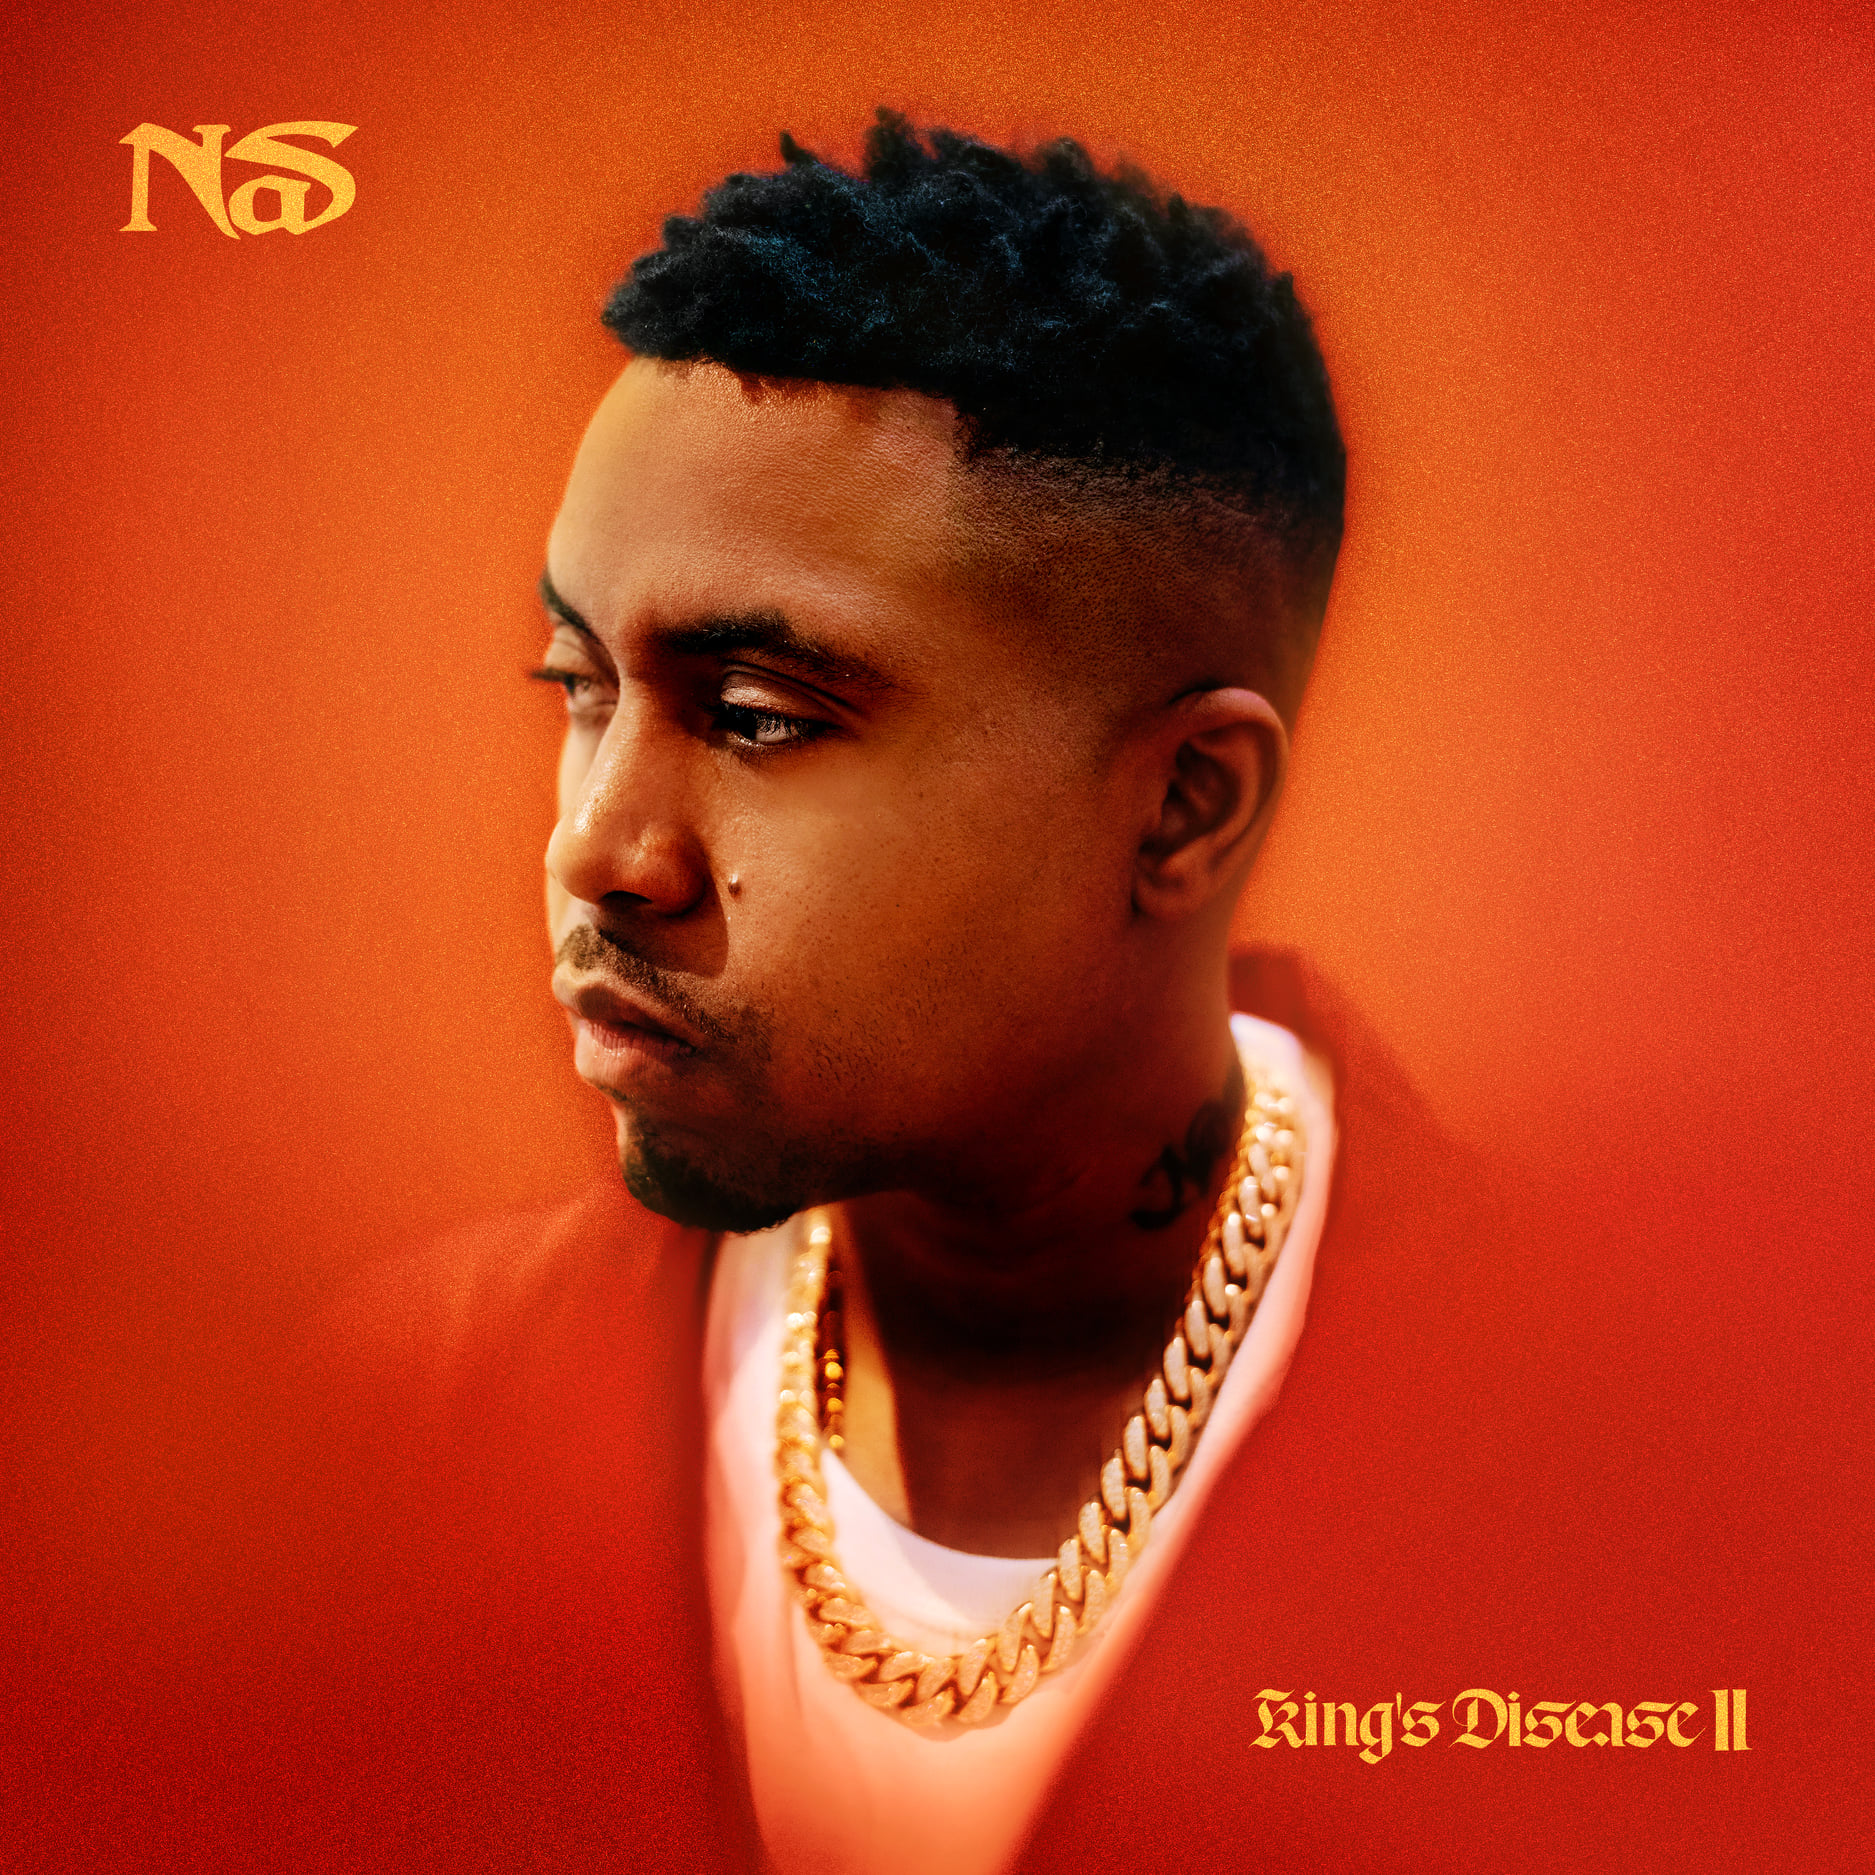 Nas - King's Disease II [Full Album Download] (Zip & MP3)